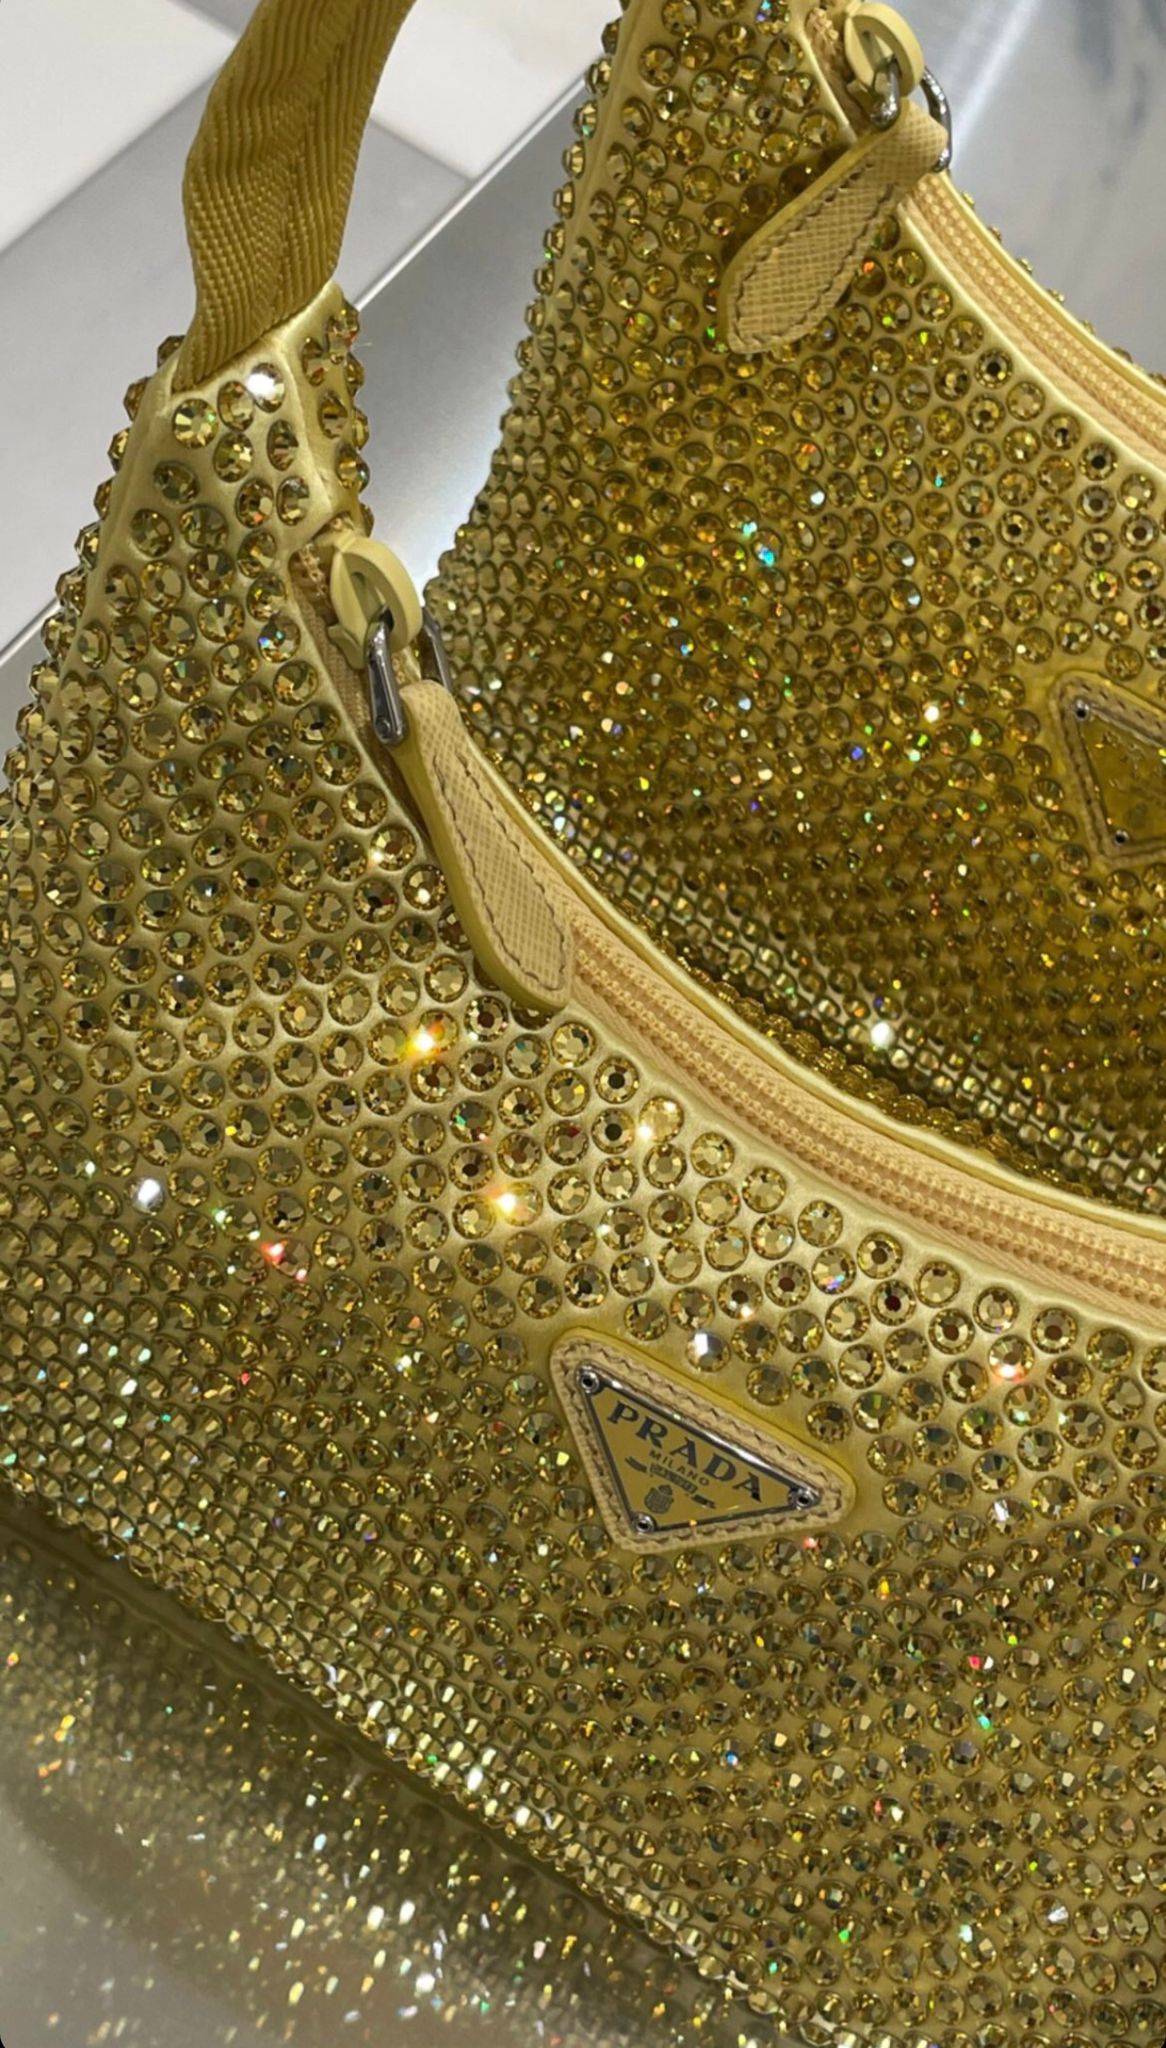 Prada Satin Bag With Crystals (Gold)